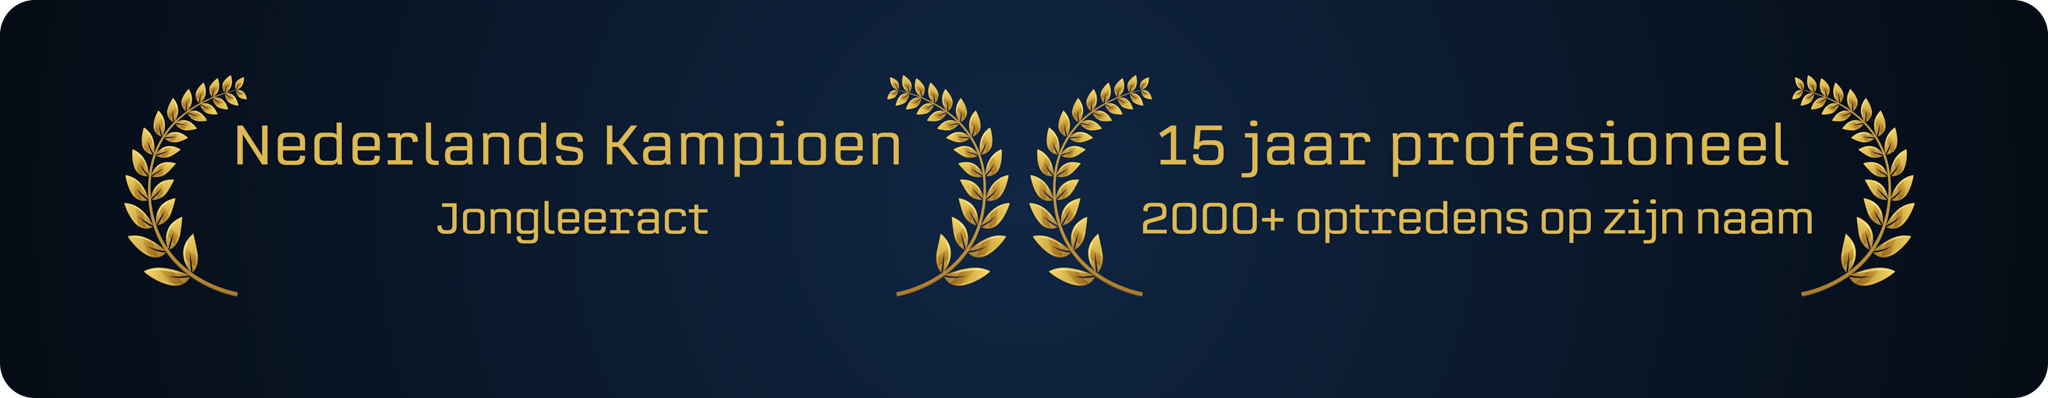 Nederlands Kampioen Jongleeract - 15 jaar professioneel 2000+ optredens Huub